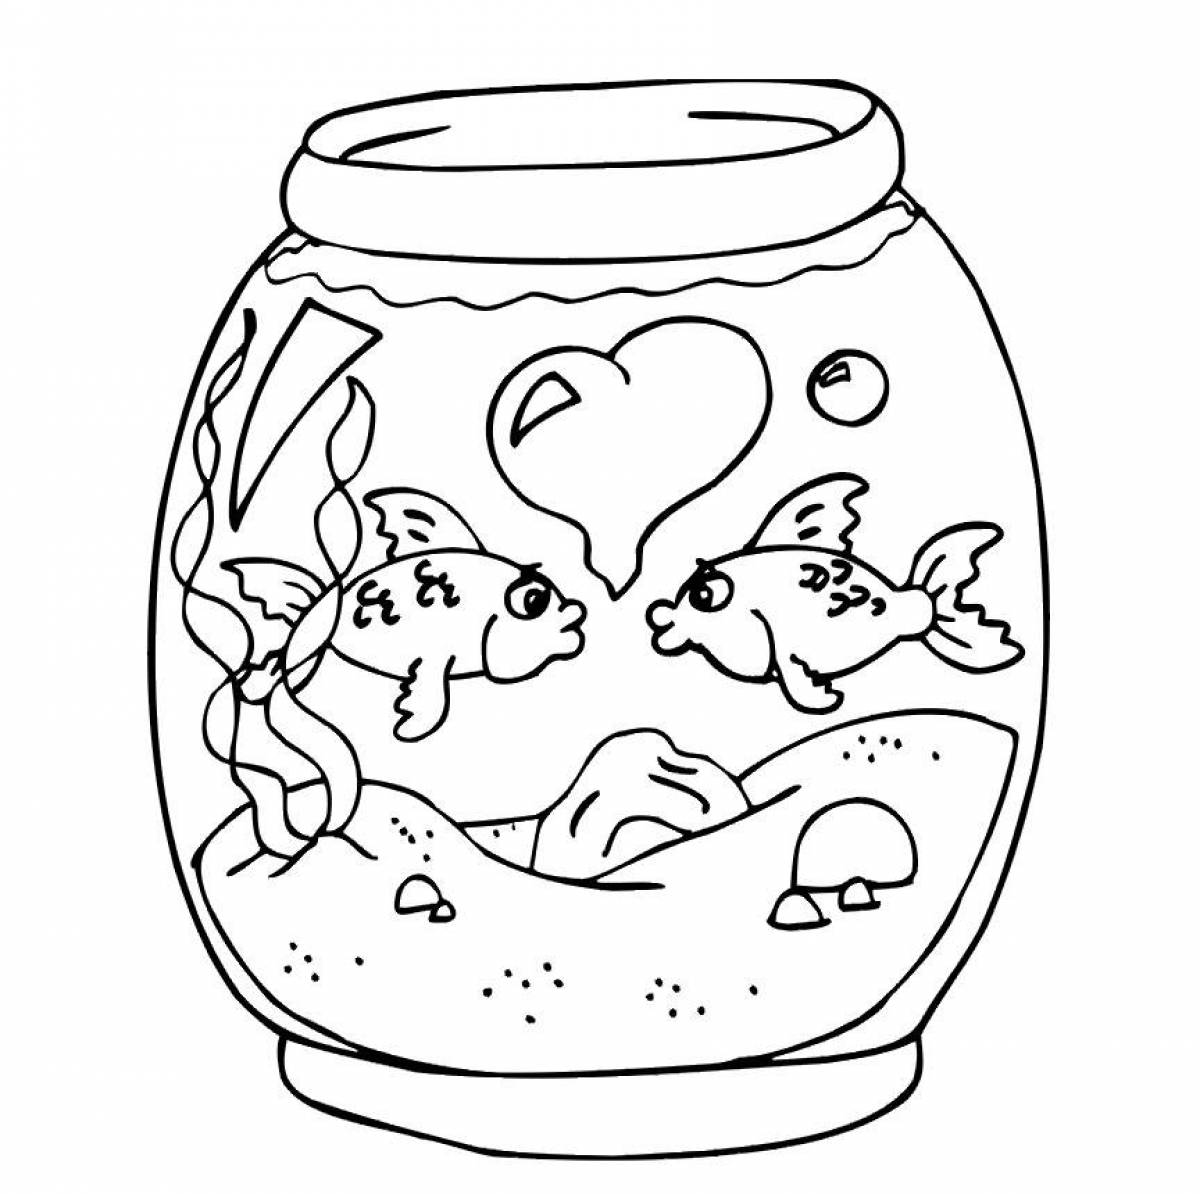 Увлекательный аквариум с рыбками